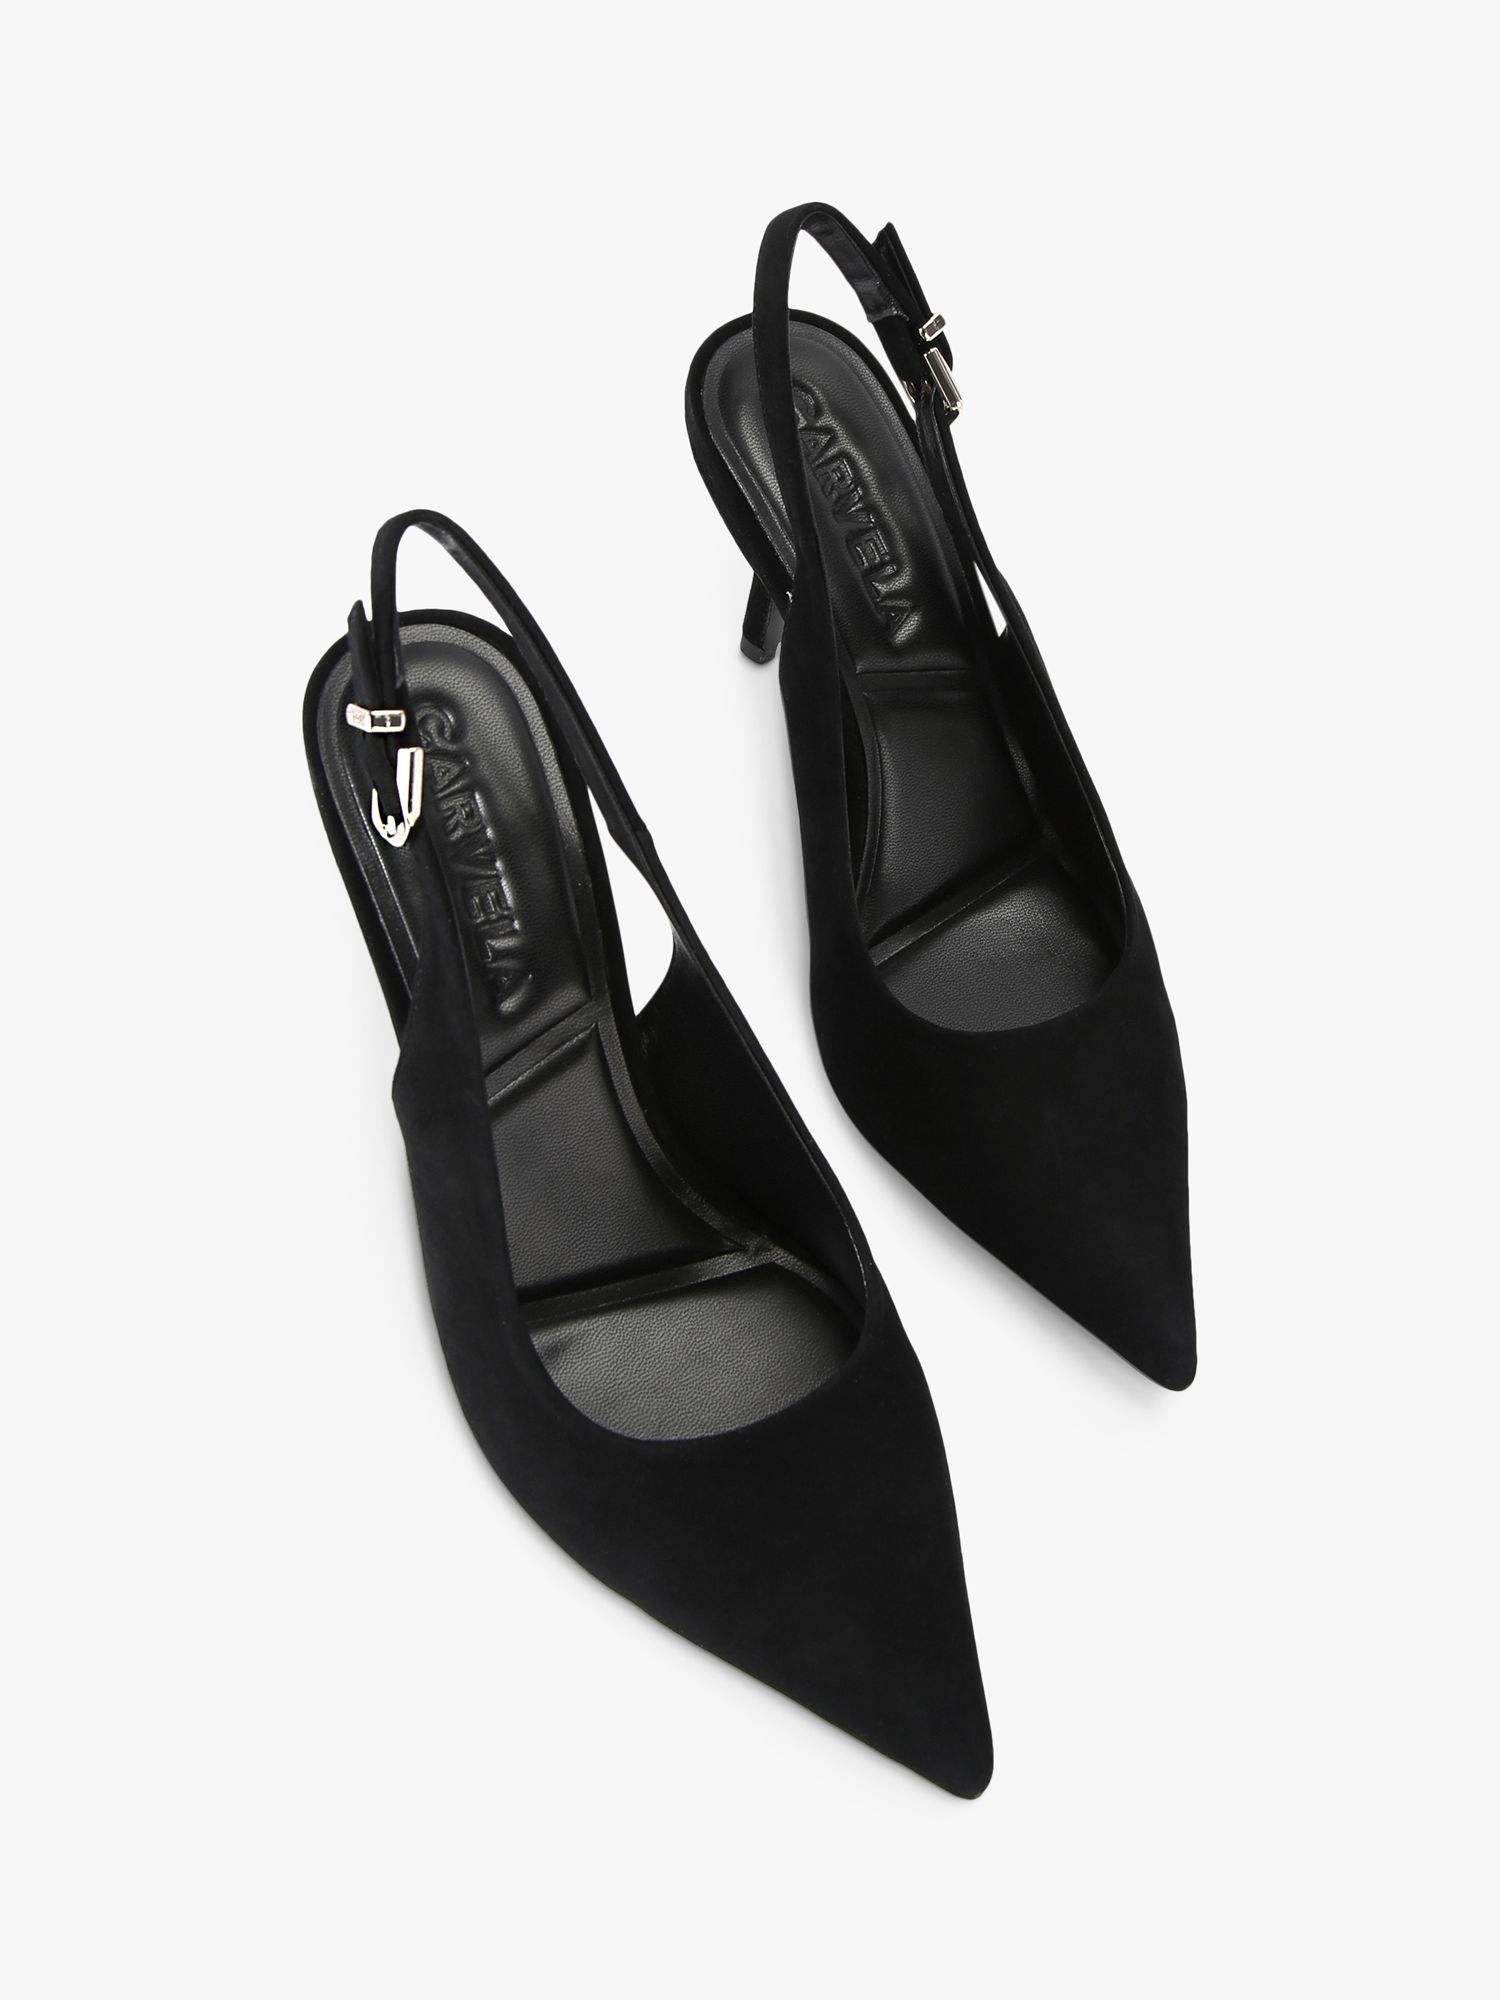 Carvela Symmetry Sling Back Court Shoes, Black at John Lewis & Partners